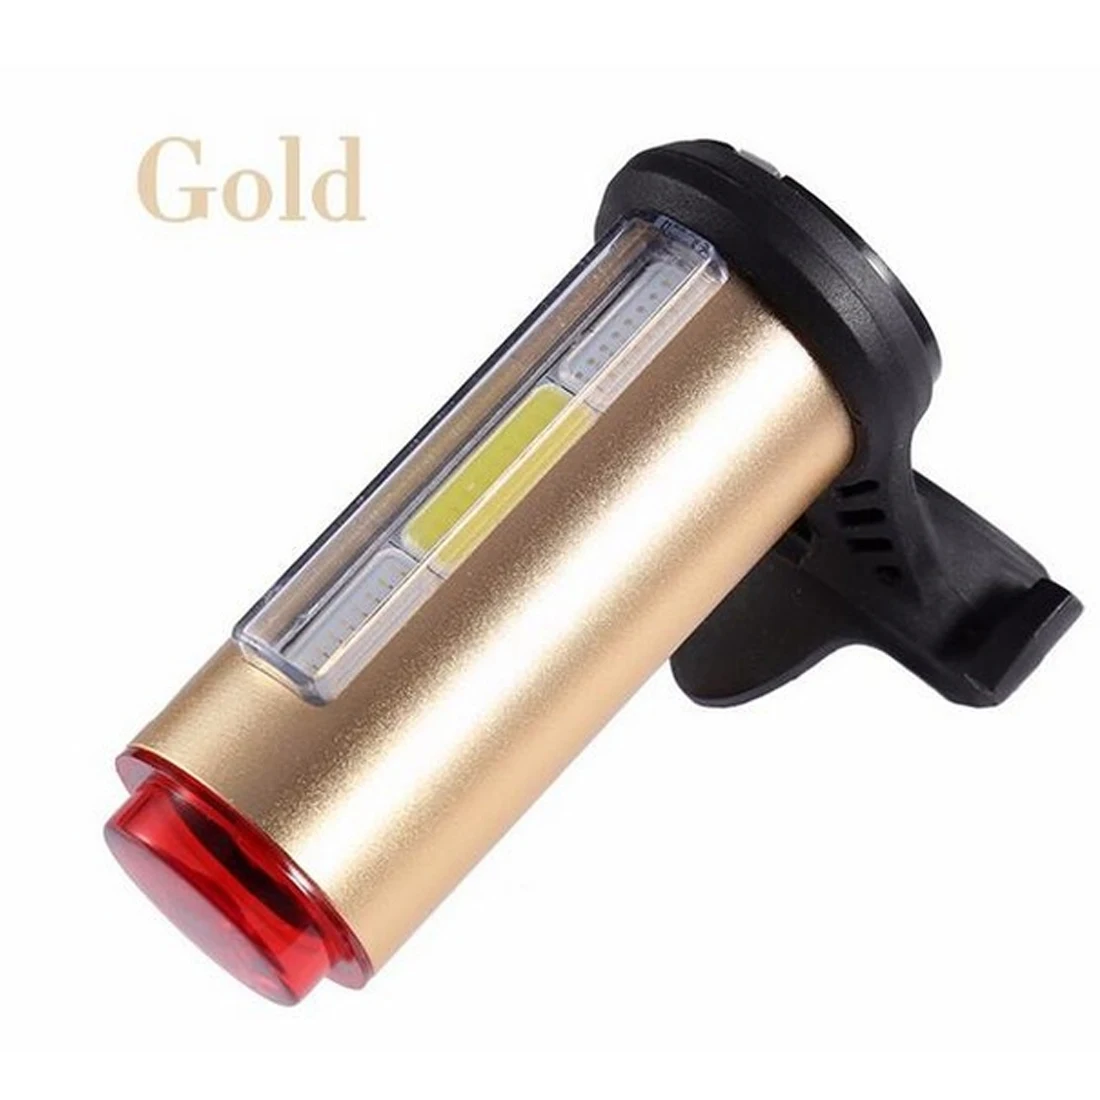 Светильник велосипедный задний фонарь Аксессуары для велосипеда предупреждающий светильник наземный светильник велосипедный USB светильник светодиодный 360 градусов лазер - Цвет: Gold